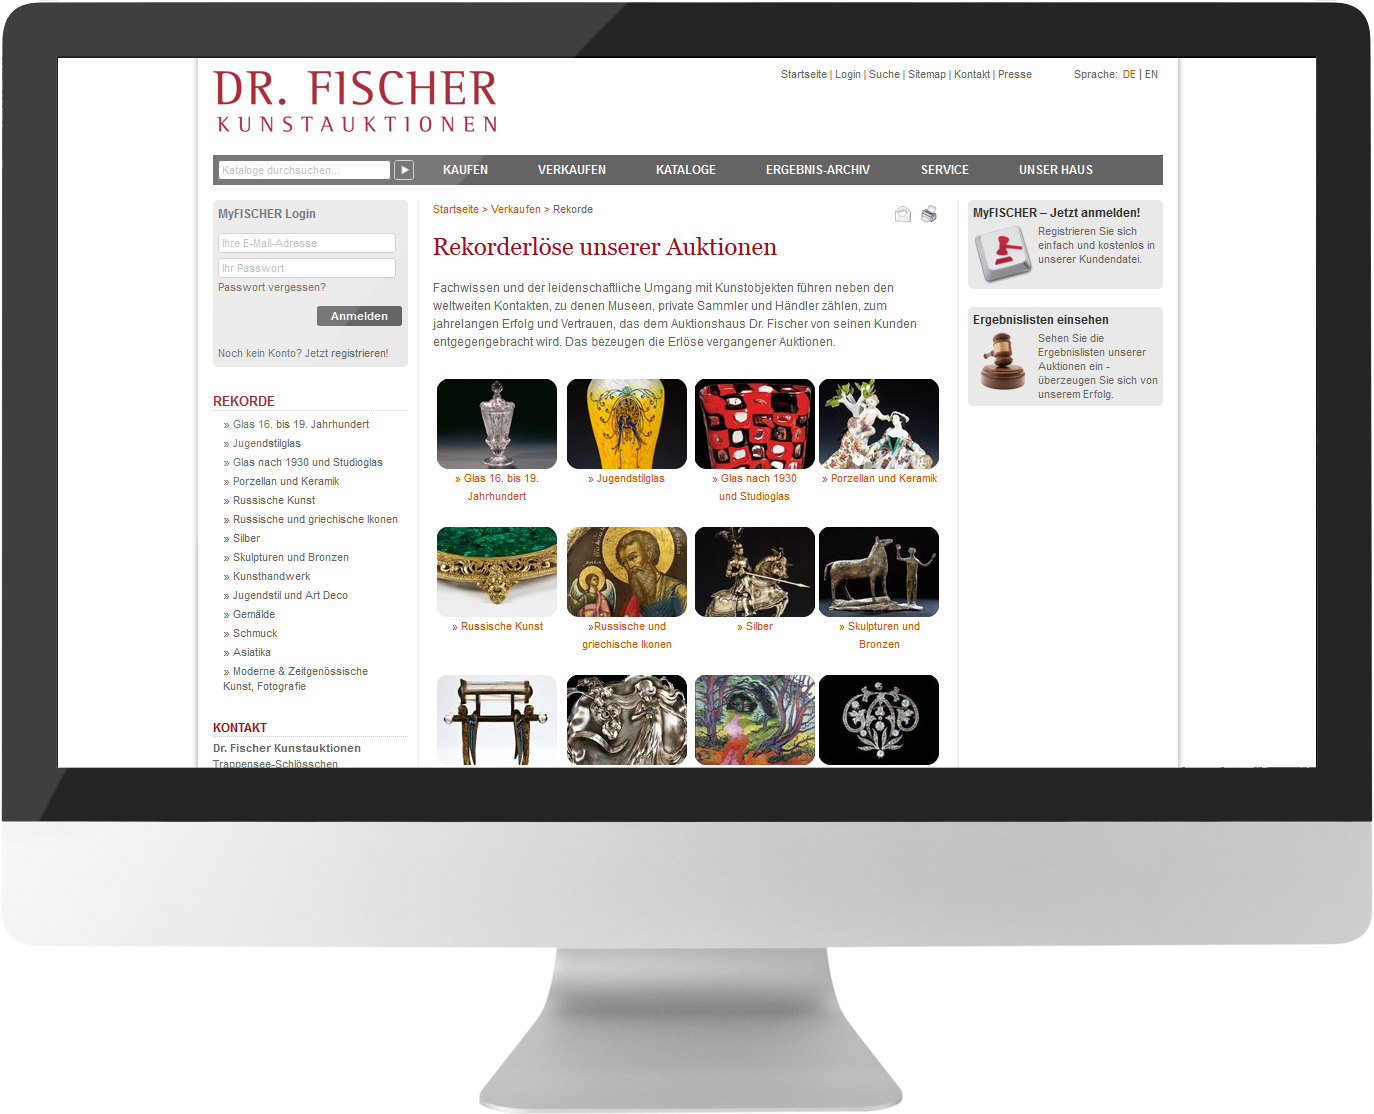 Bildmontage Auktionshaus Dr. Fischer Website GmbH & Co. KG Desktop Katalog-Übersicht